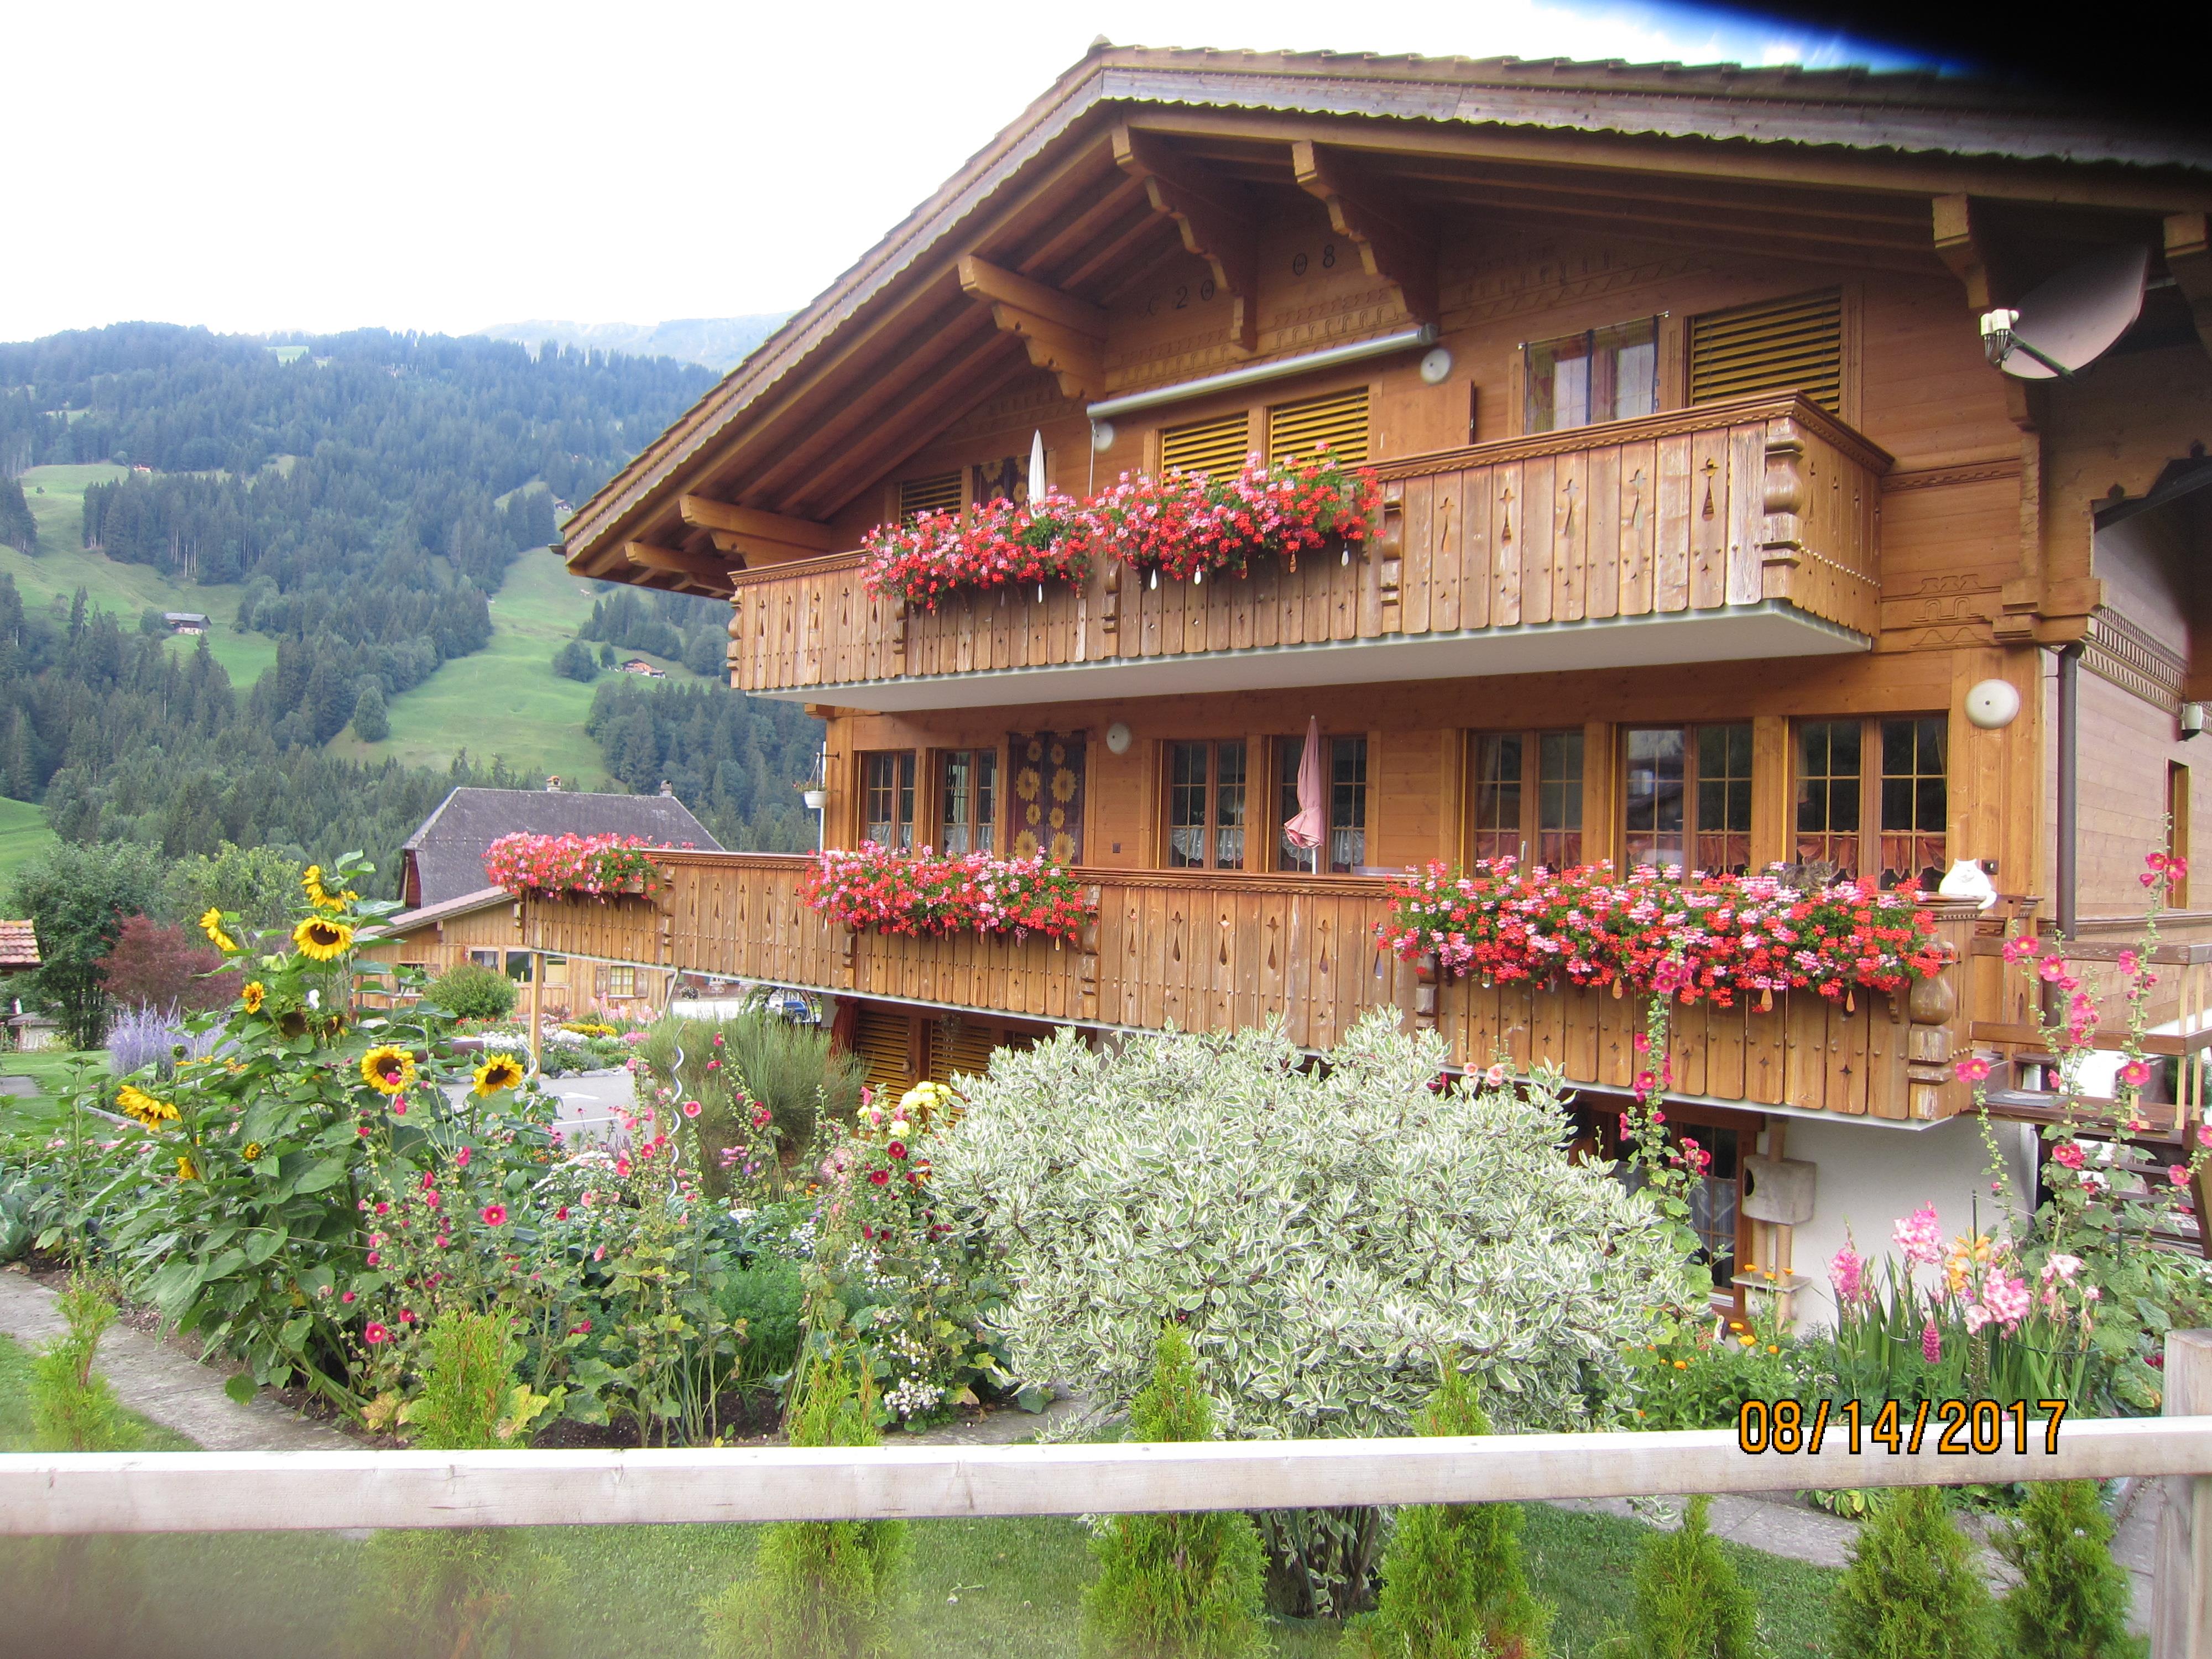 Morgenstern 4-Bett-Wohnung Ferienwohnung in der Schweiz